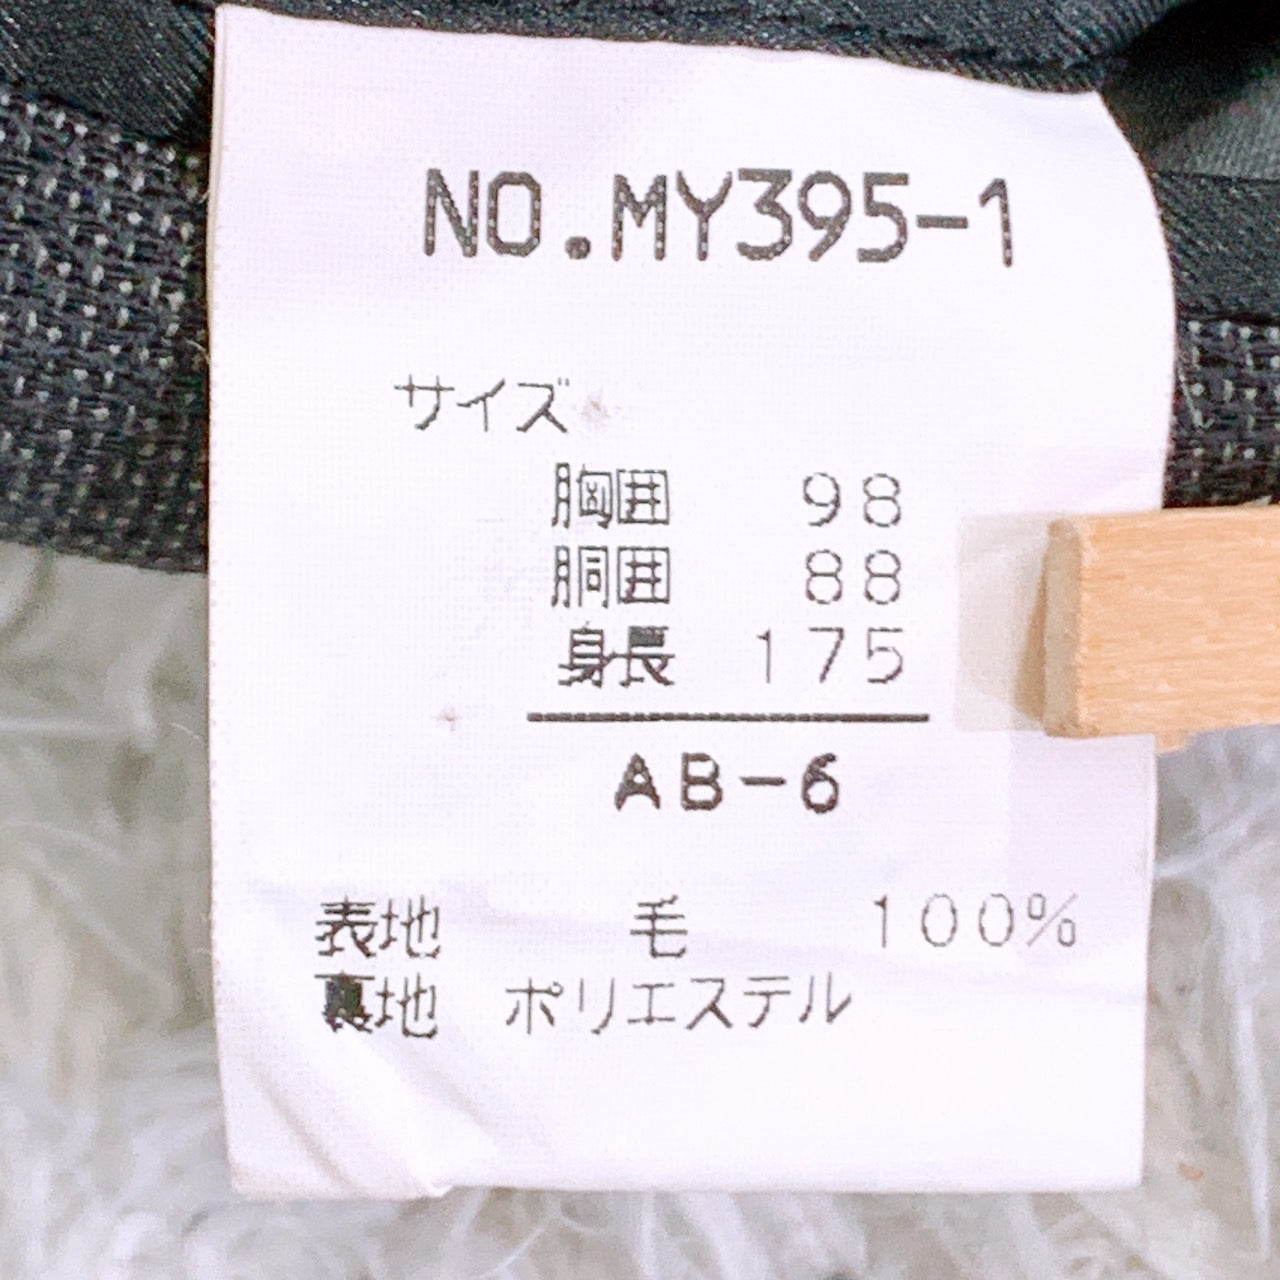 【26887】 MinMalism ミニマリズム スーツ サイズAB-6 / 約XL(LL) グレー ビジネス 通勤 オフィス 3B ツータック シンプル メンズ